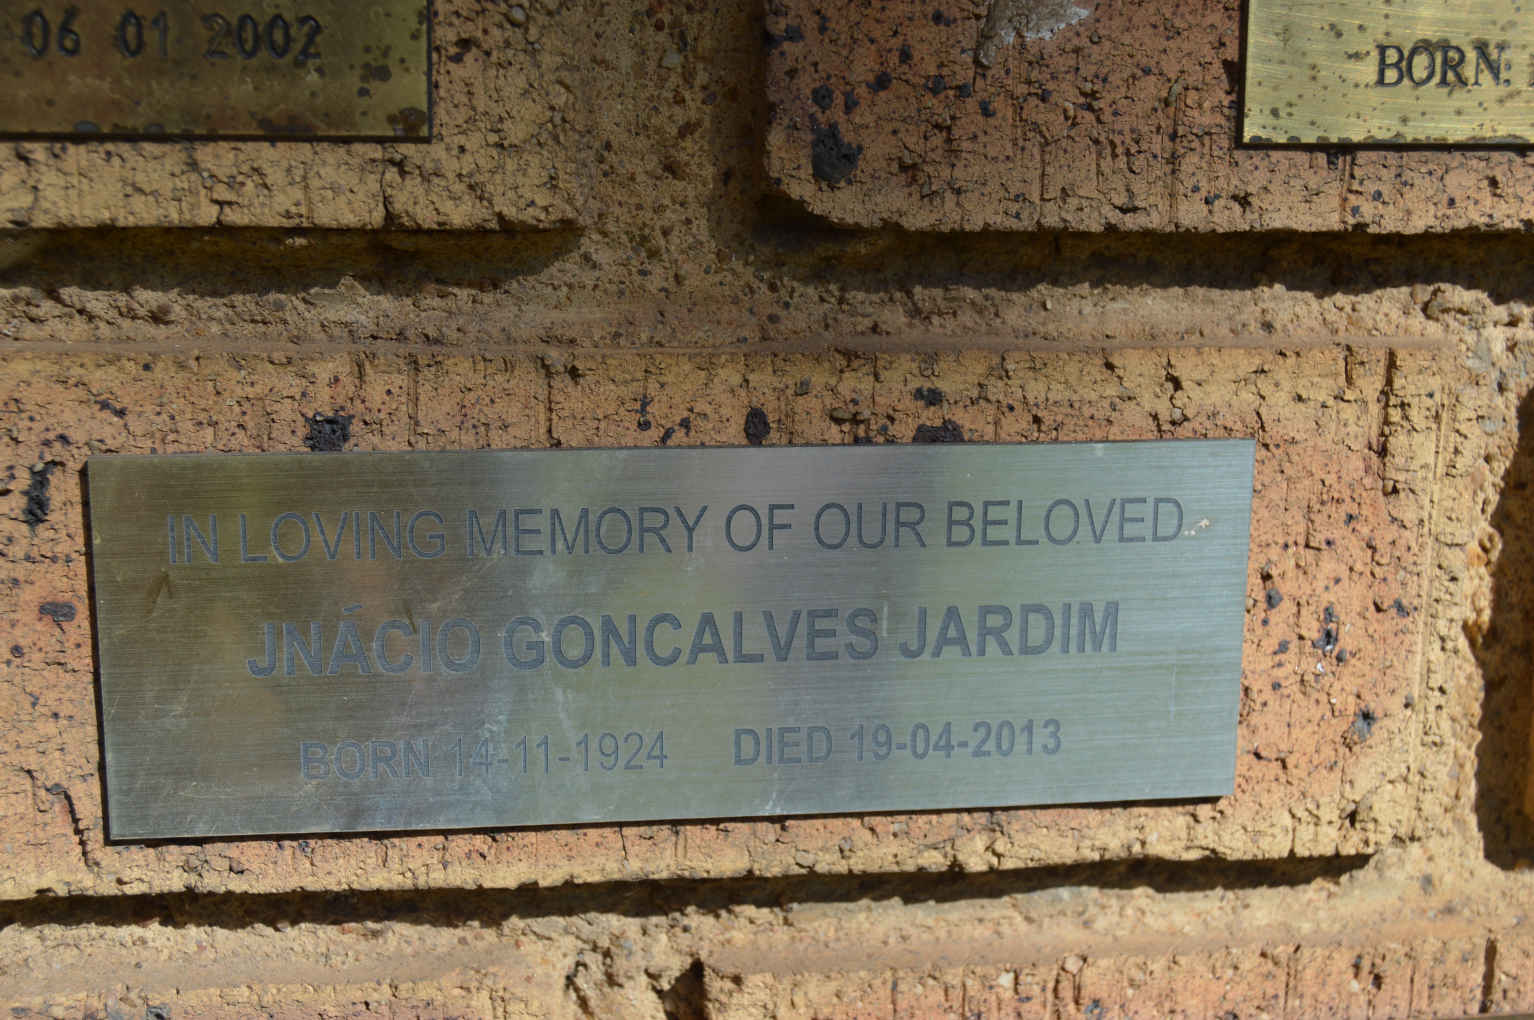 JARDIM Jnácio Goncalves 1924-2013